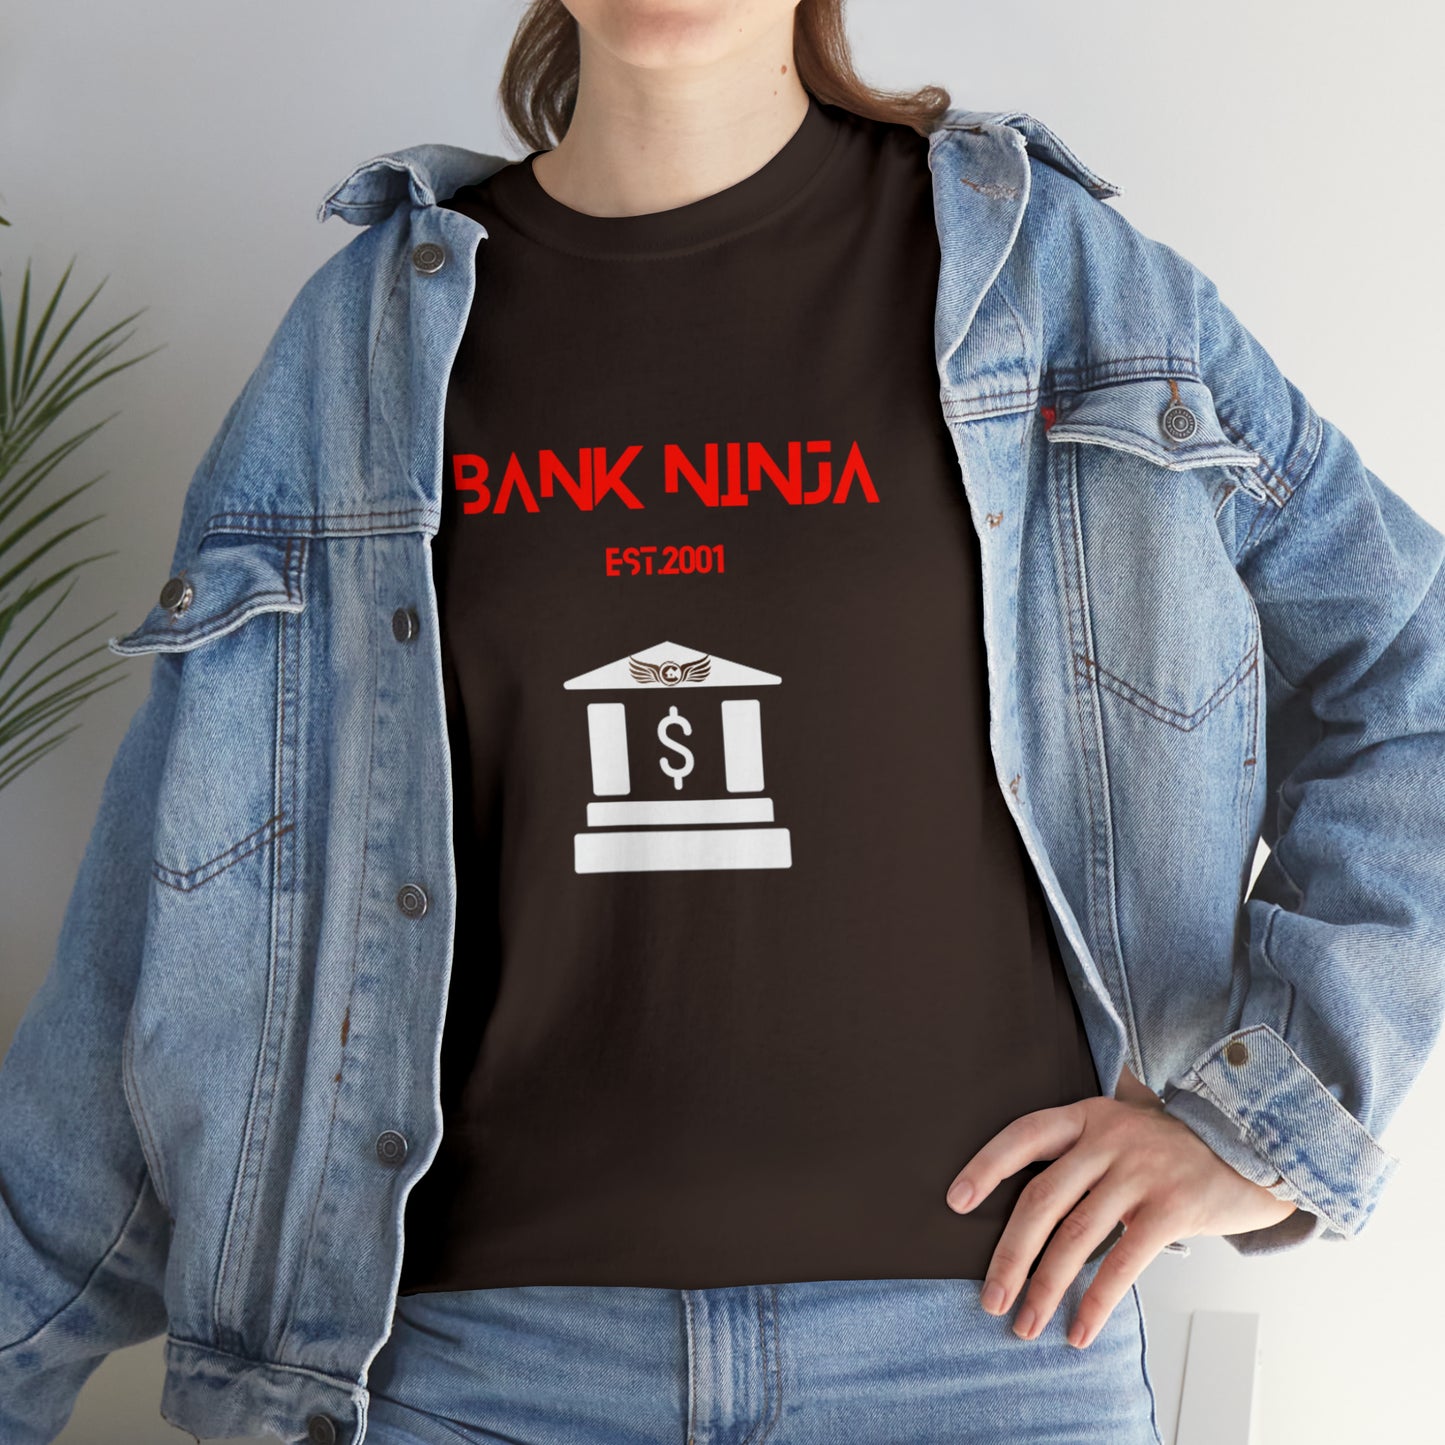 Bank Ninja Unisex Heavy Cotton Tee